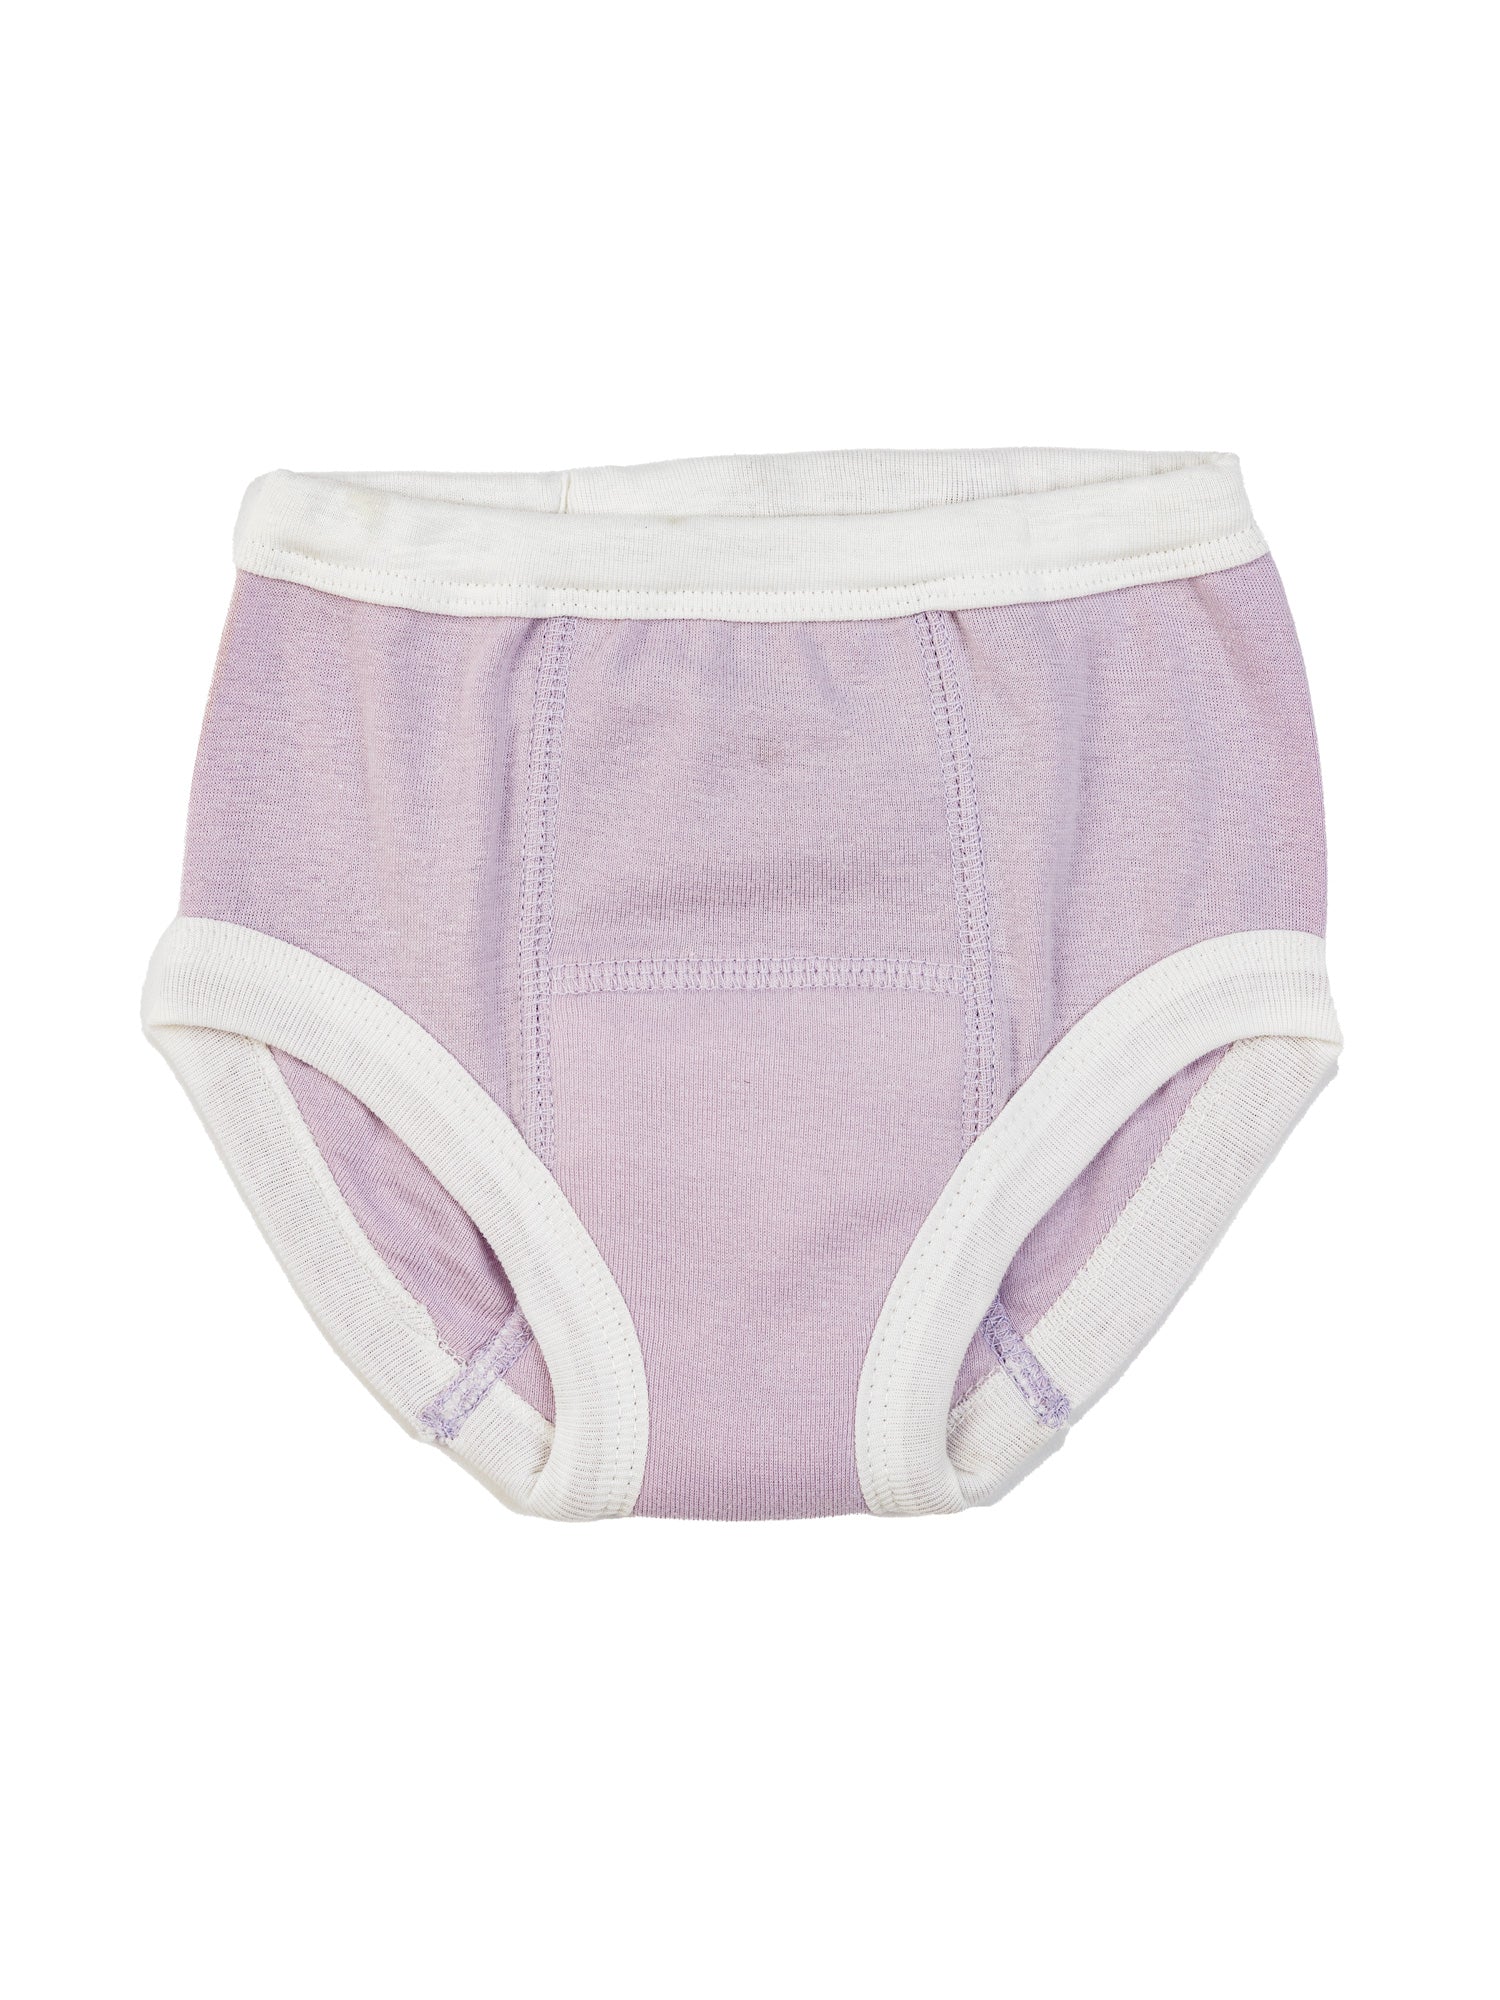  Training Underwear for Girls Potty Training Underwear